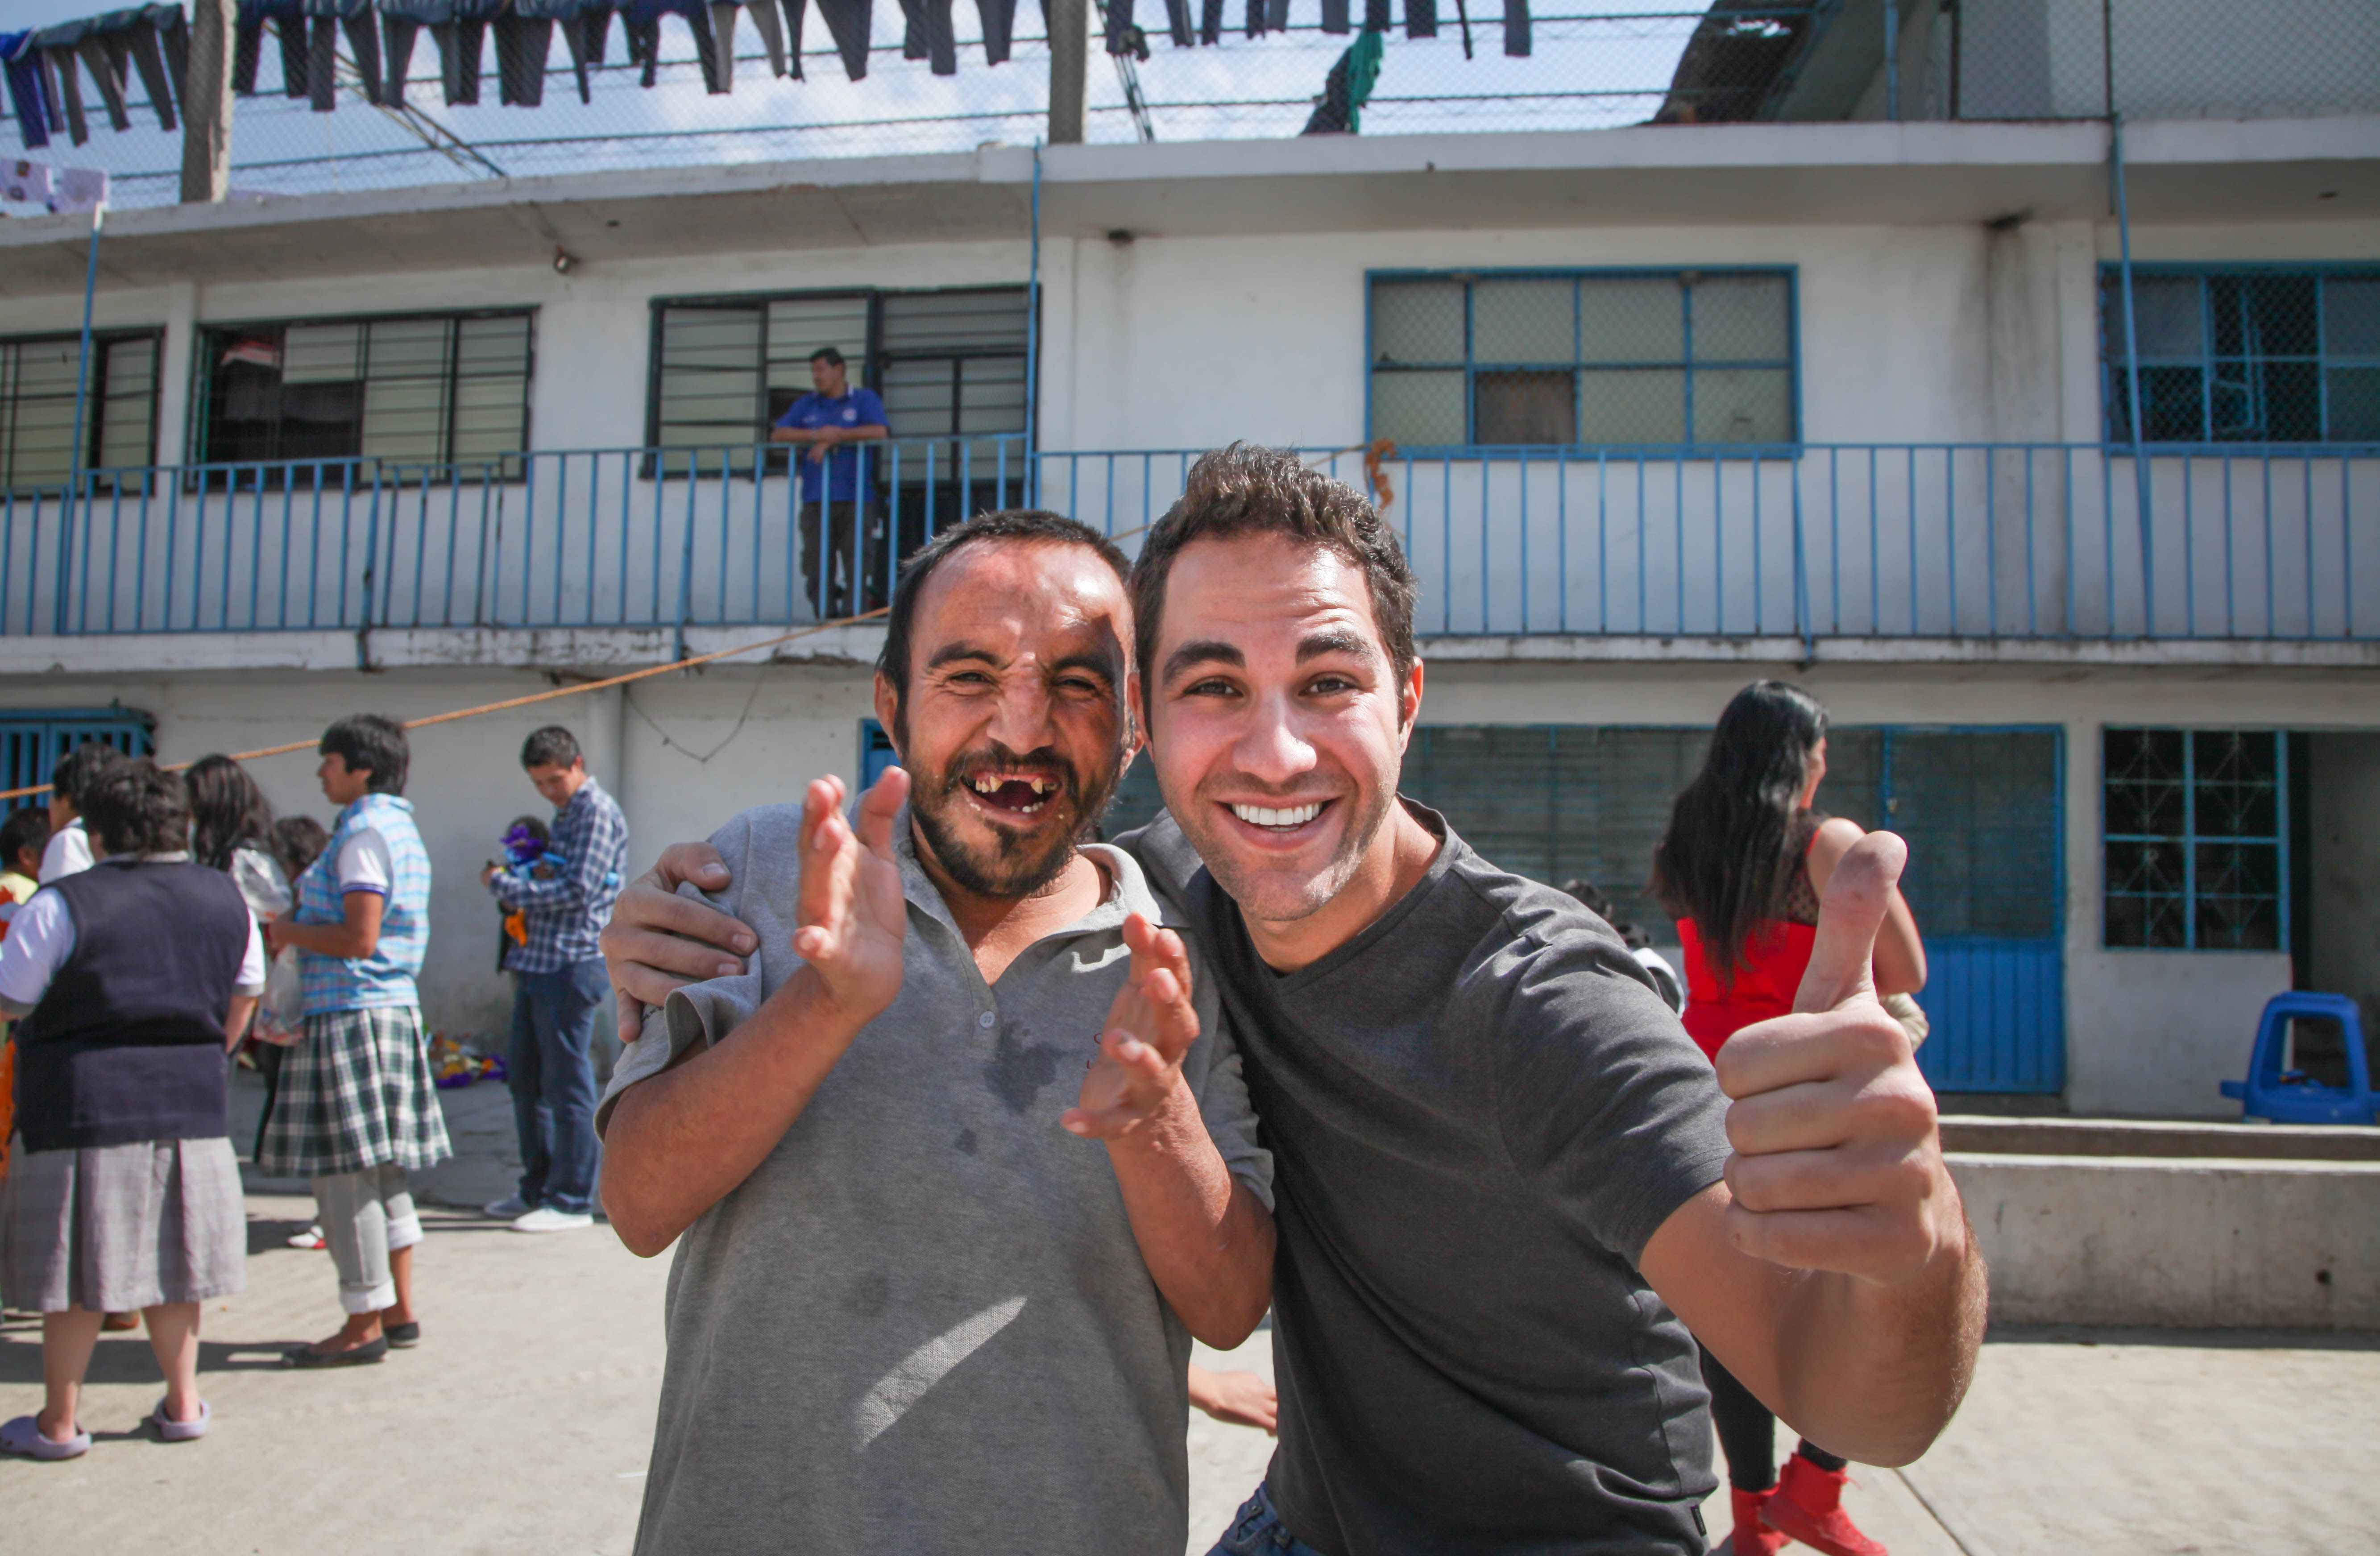 Encuentro con el juego inflable de Expedición Sonrisa en el Hogar Divina Providencia, Ciudad de México, México